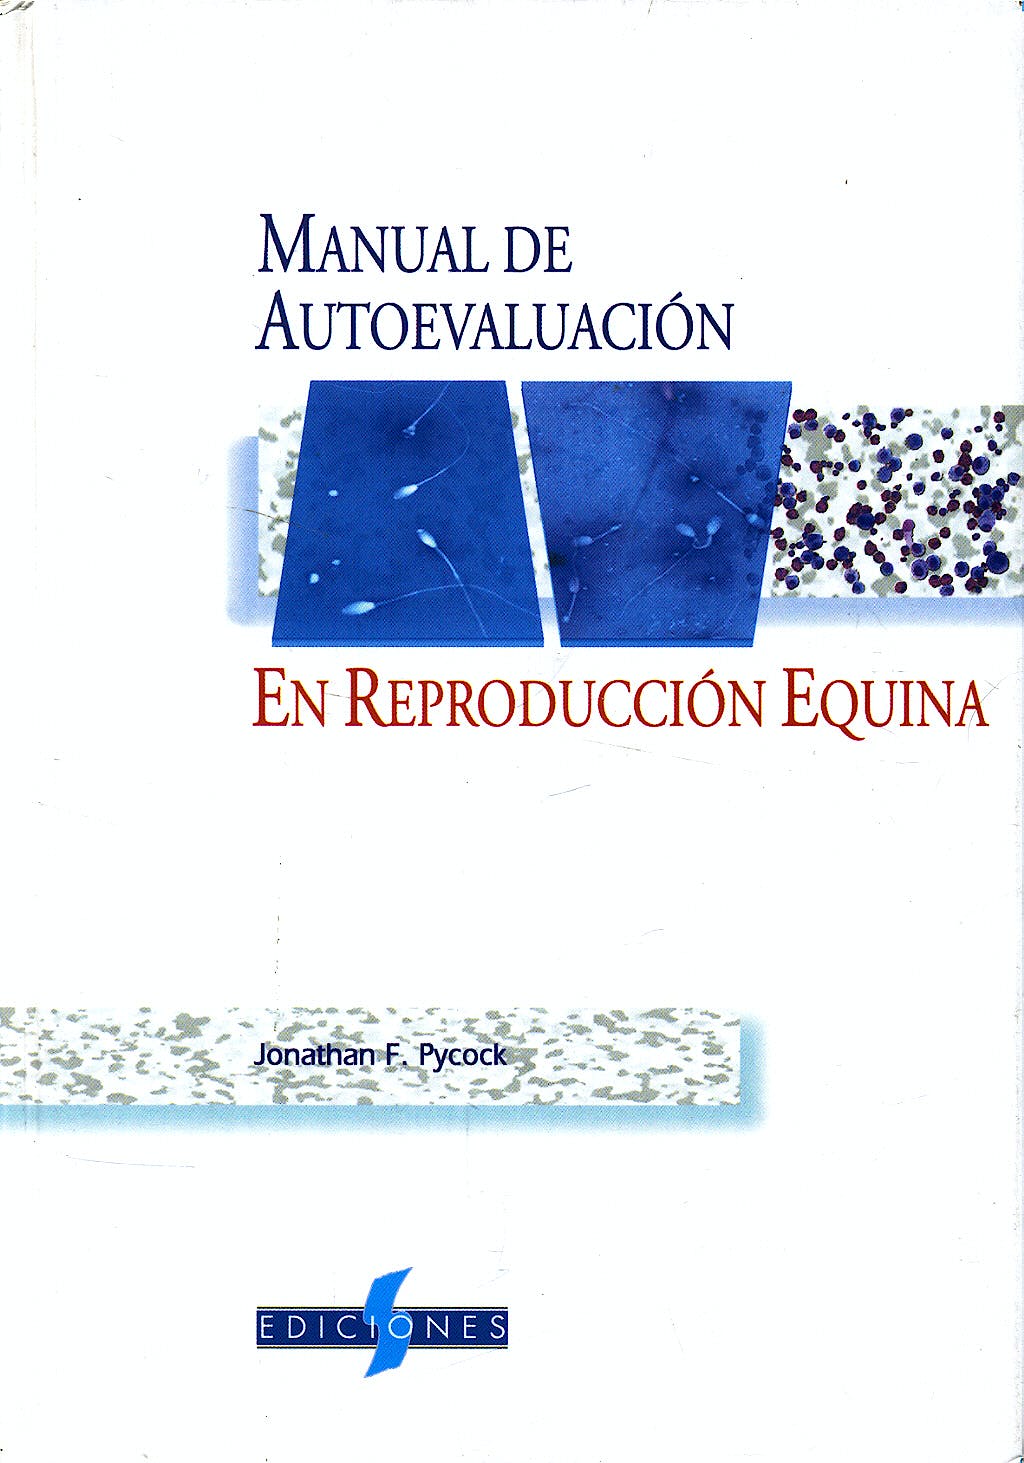 Manual de autoevaluación en reproducción equina